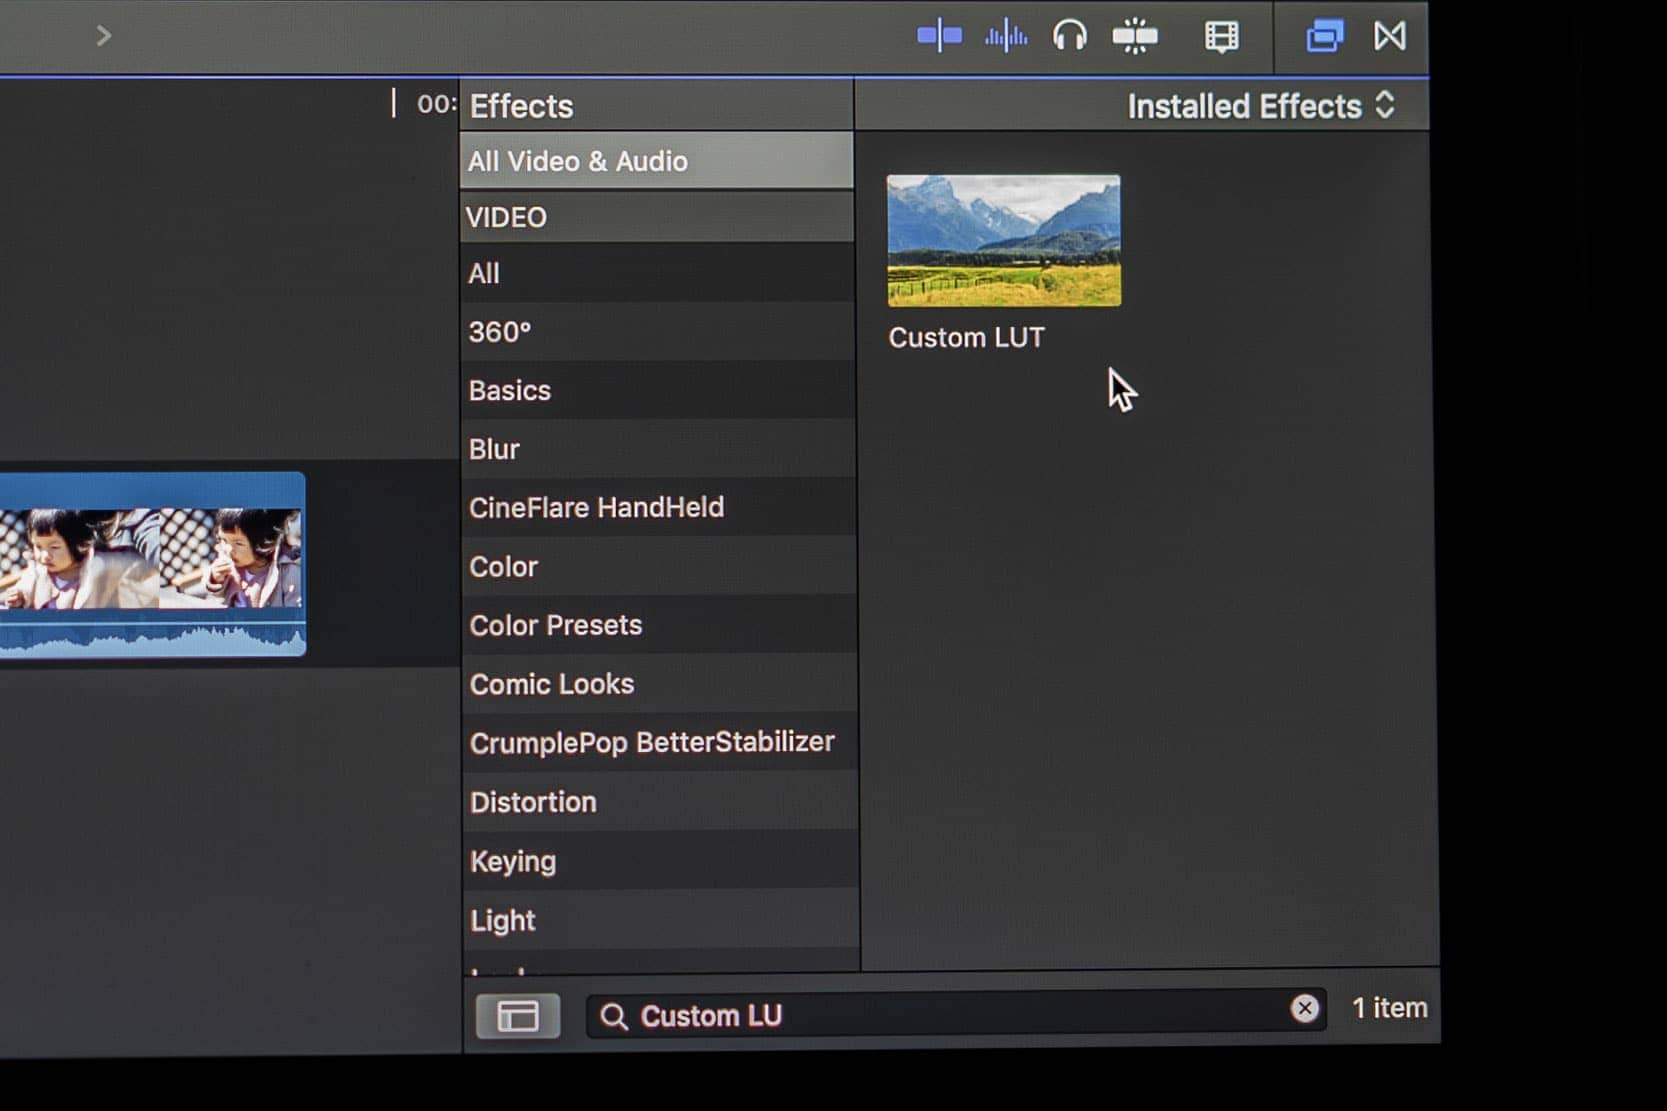 Custom LUT in the effects panel Final Cut Pro X